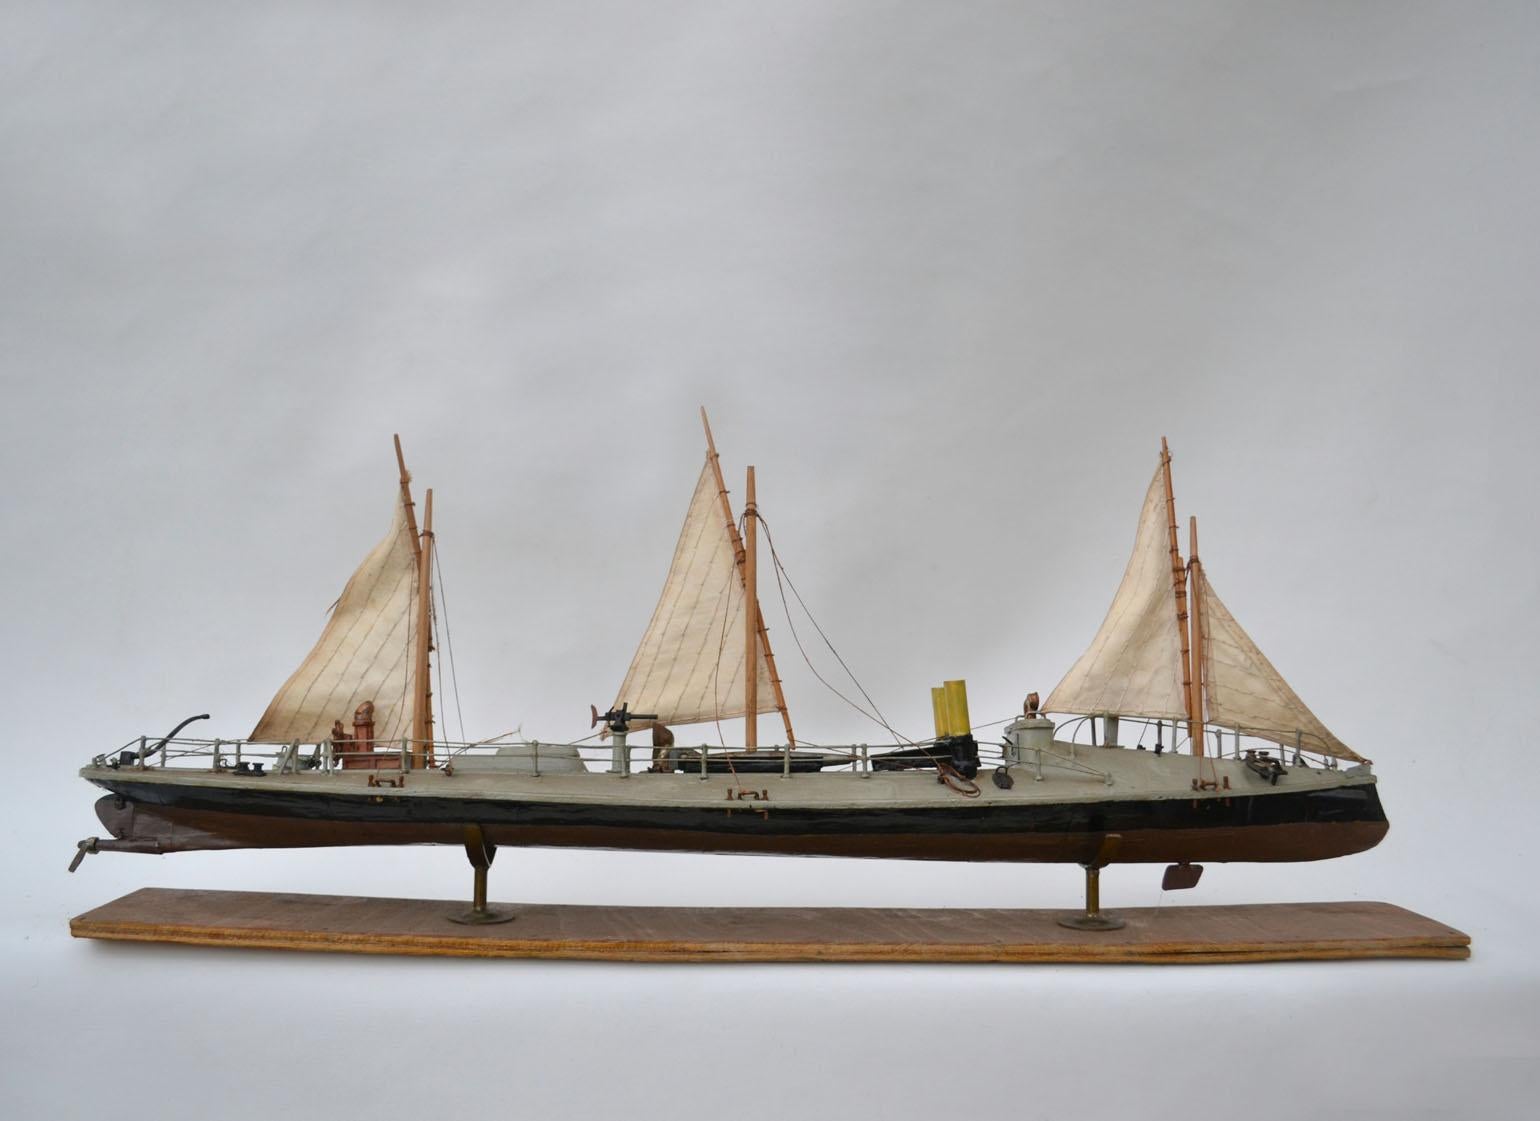 Handgefertigtes und detailliertes Modell eines Dreimaster-Torpedobootes der Klasse Batum aus dem frühen 20. Jahrhundert, 1880.
Rammspant mit Schildkrötendeck vorn, zwei Schornsteinen nebeneinander, einem über Wasser sichtbaren Heckruder und einem